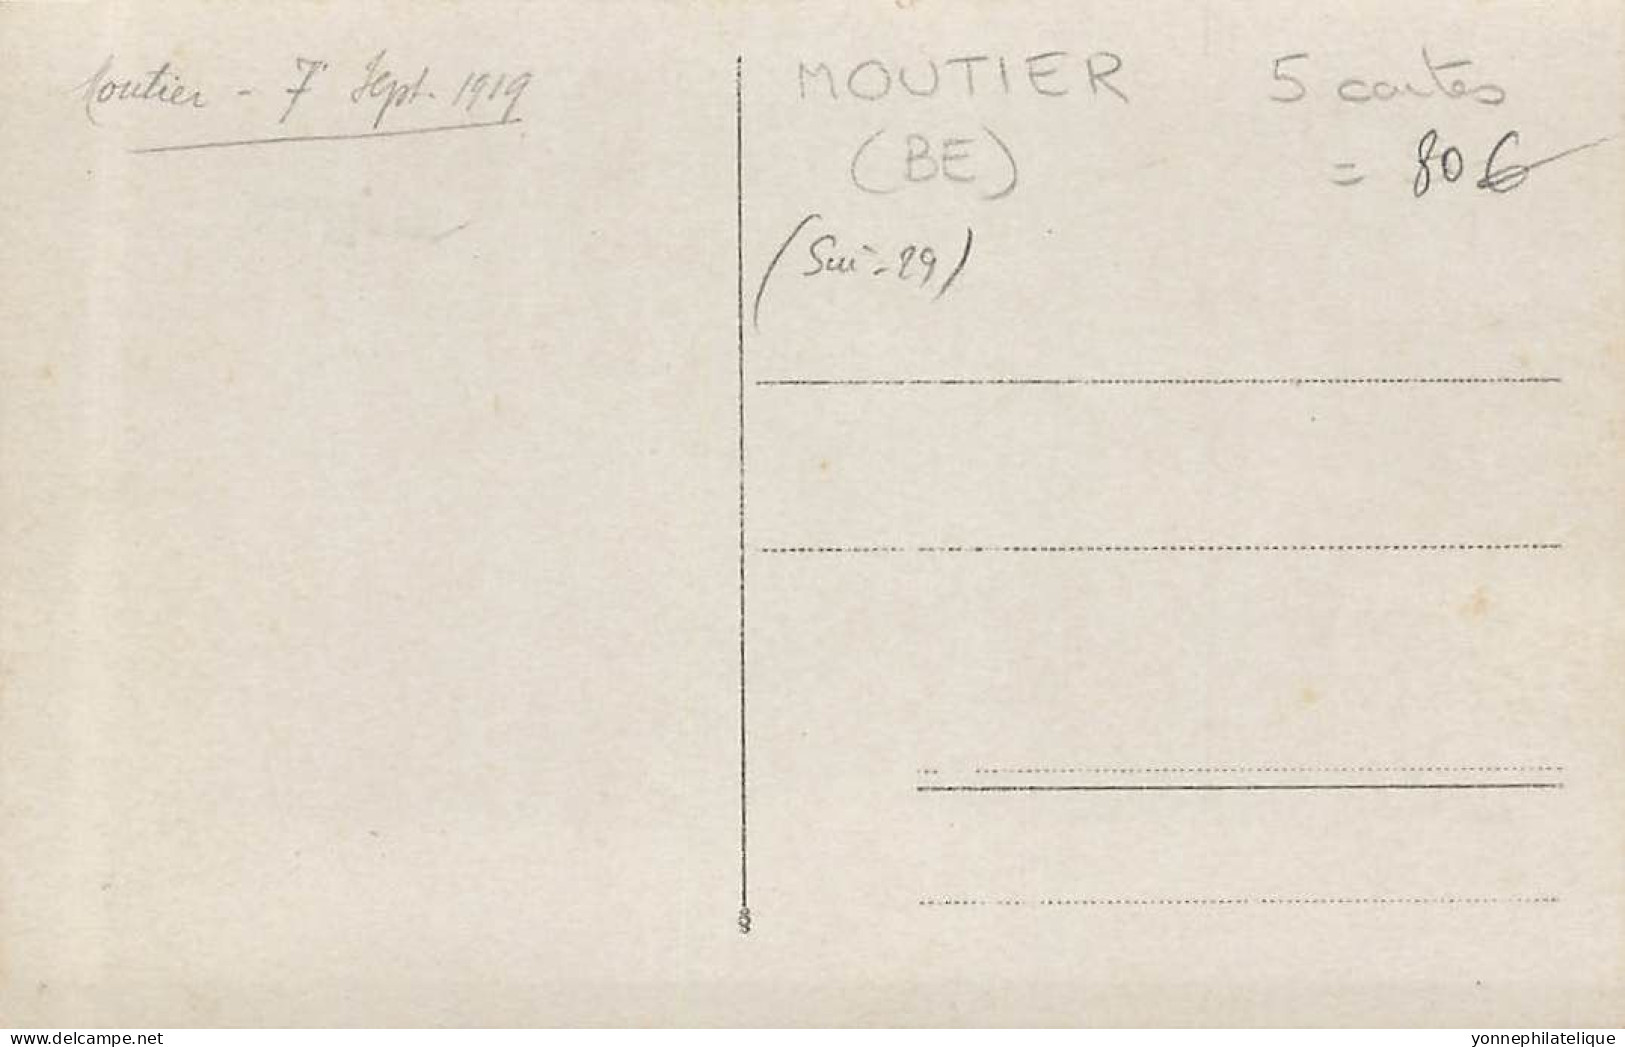 TOP - SUISSE - BE - MOUTIER - lot de 5 cartes photos défilé 7 septembre 1919 à identifier - (Sui-29)